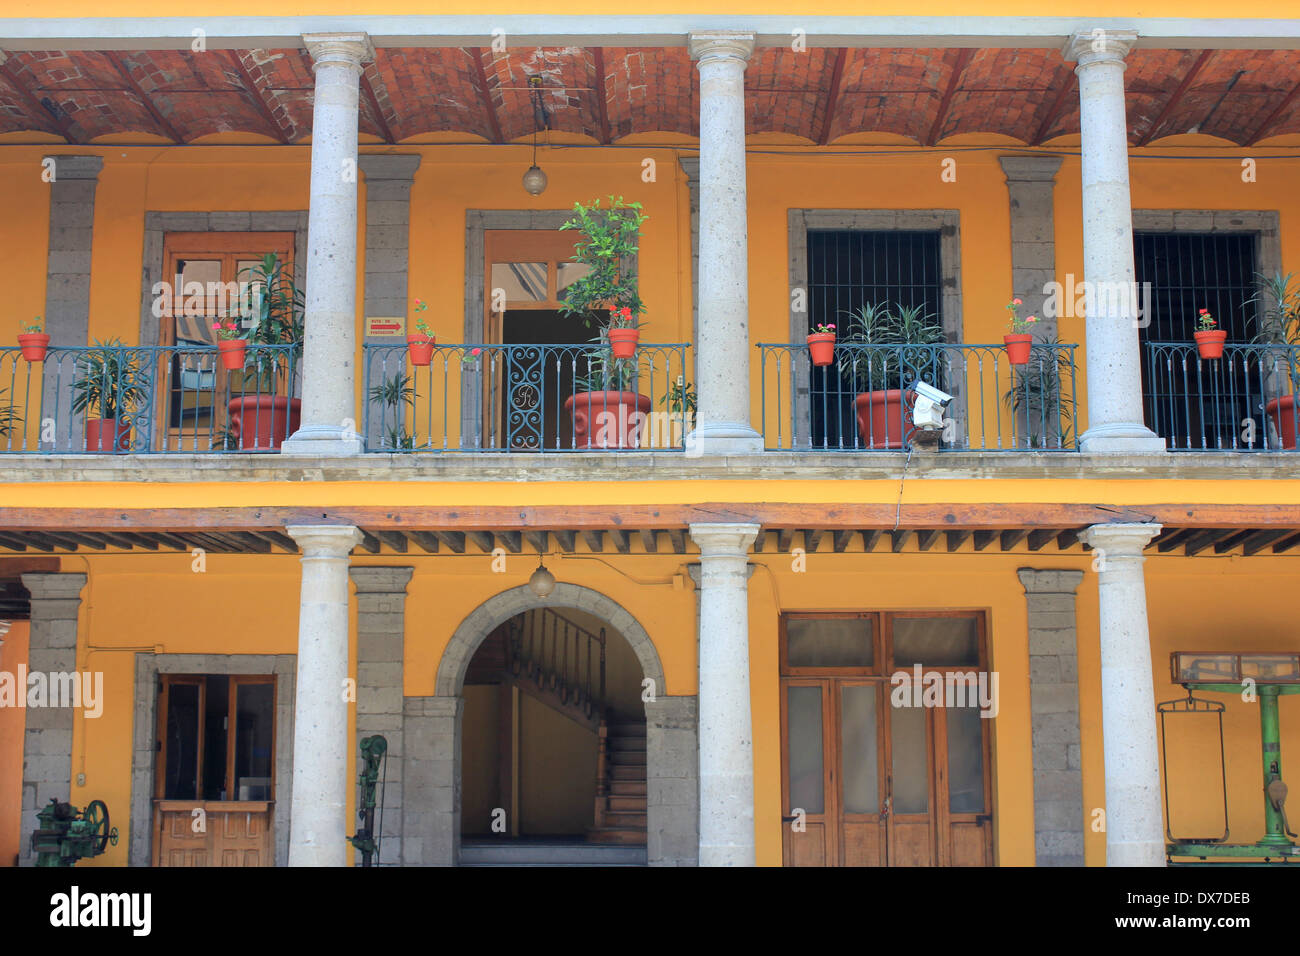 Façade of the Casa de la Mondea, Centro Historico, Mexico City Stock Photo